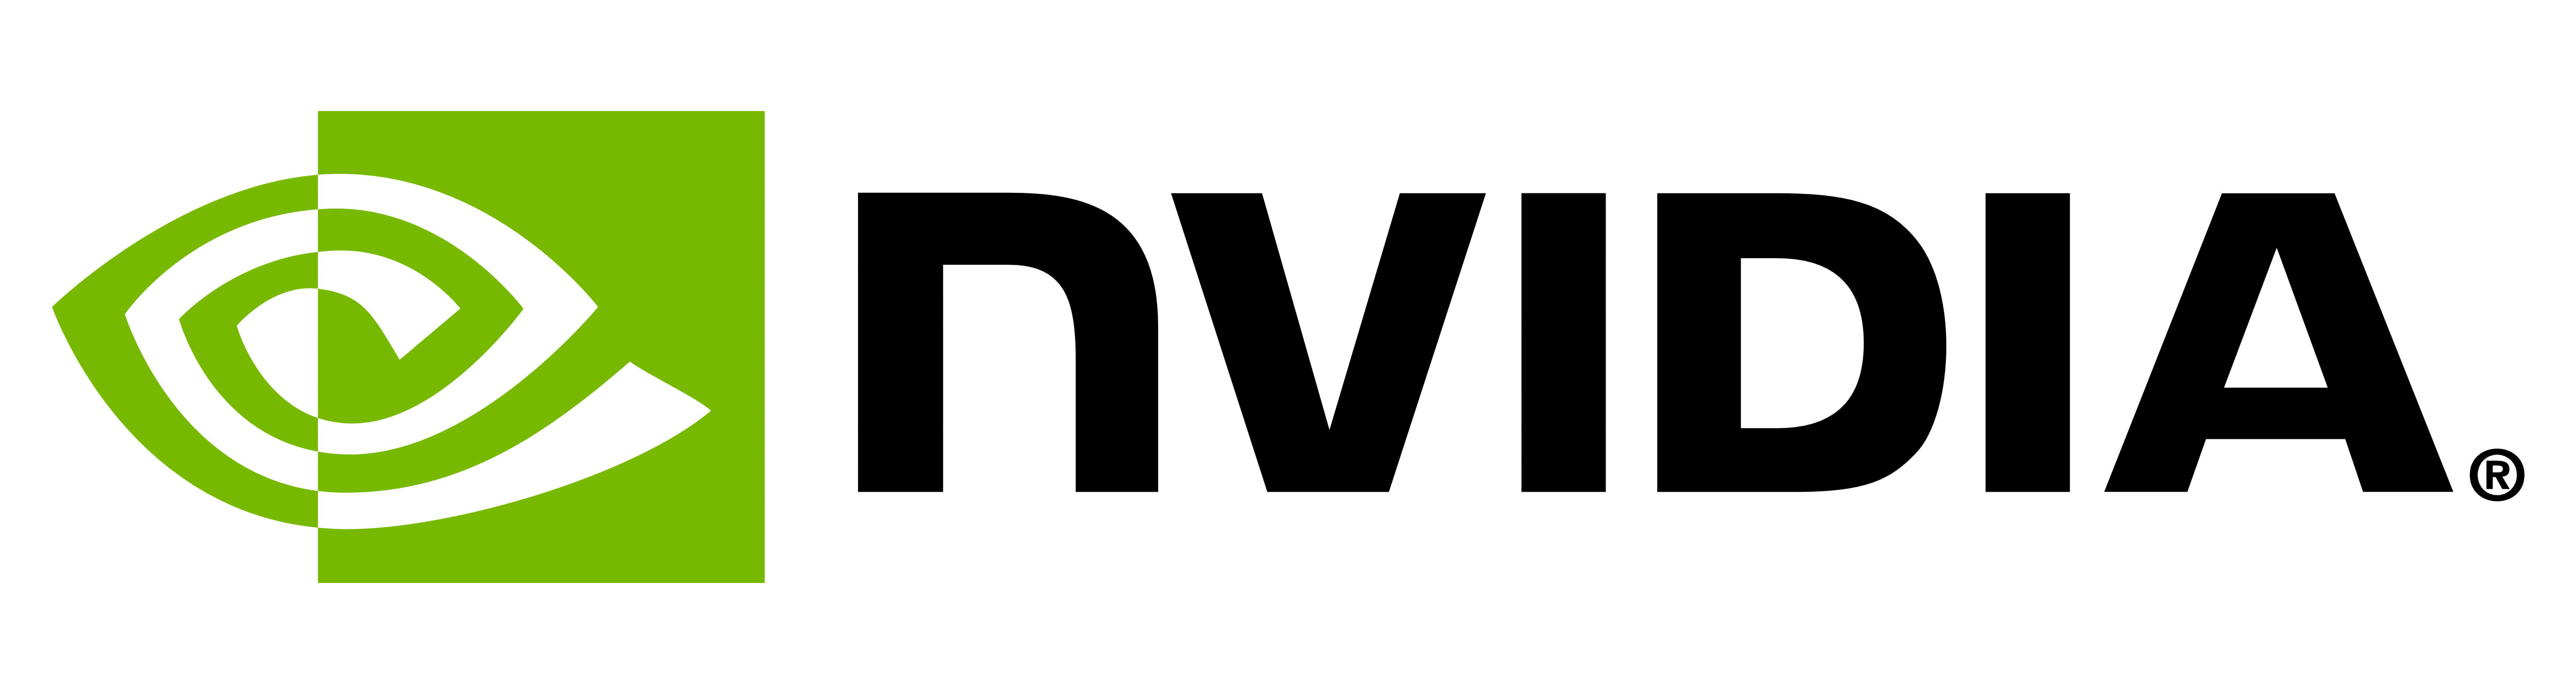 Jelentése NVIDIA logó és szimbólum | történelem és evolúció